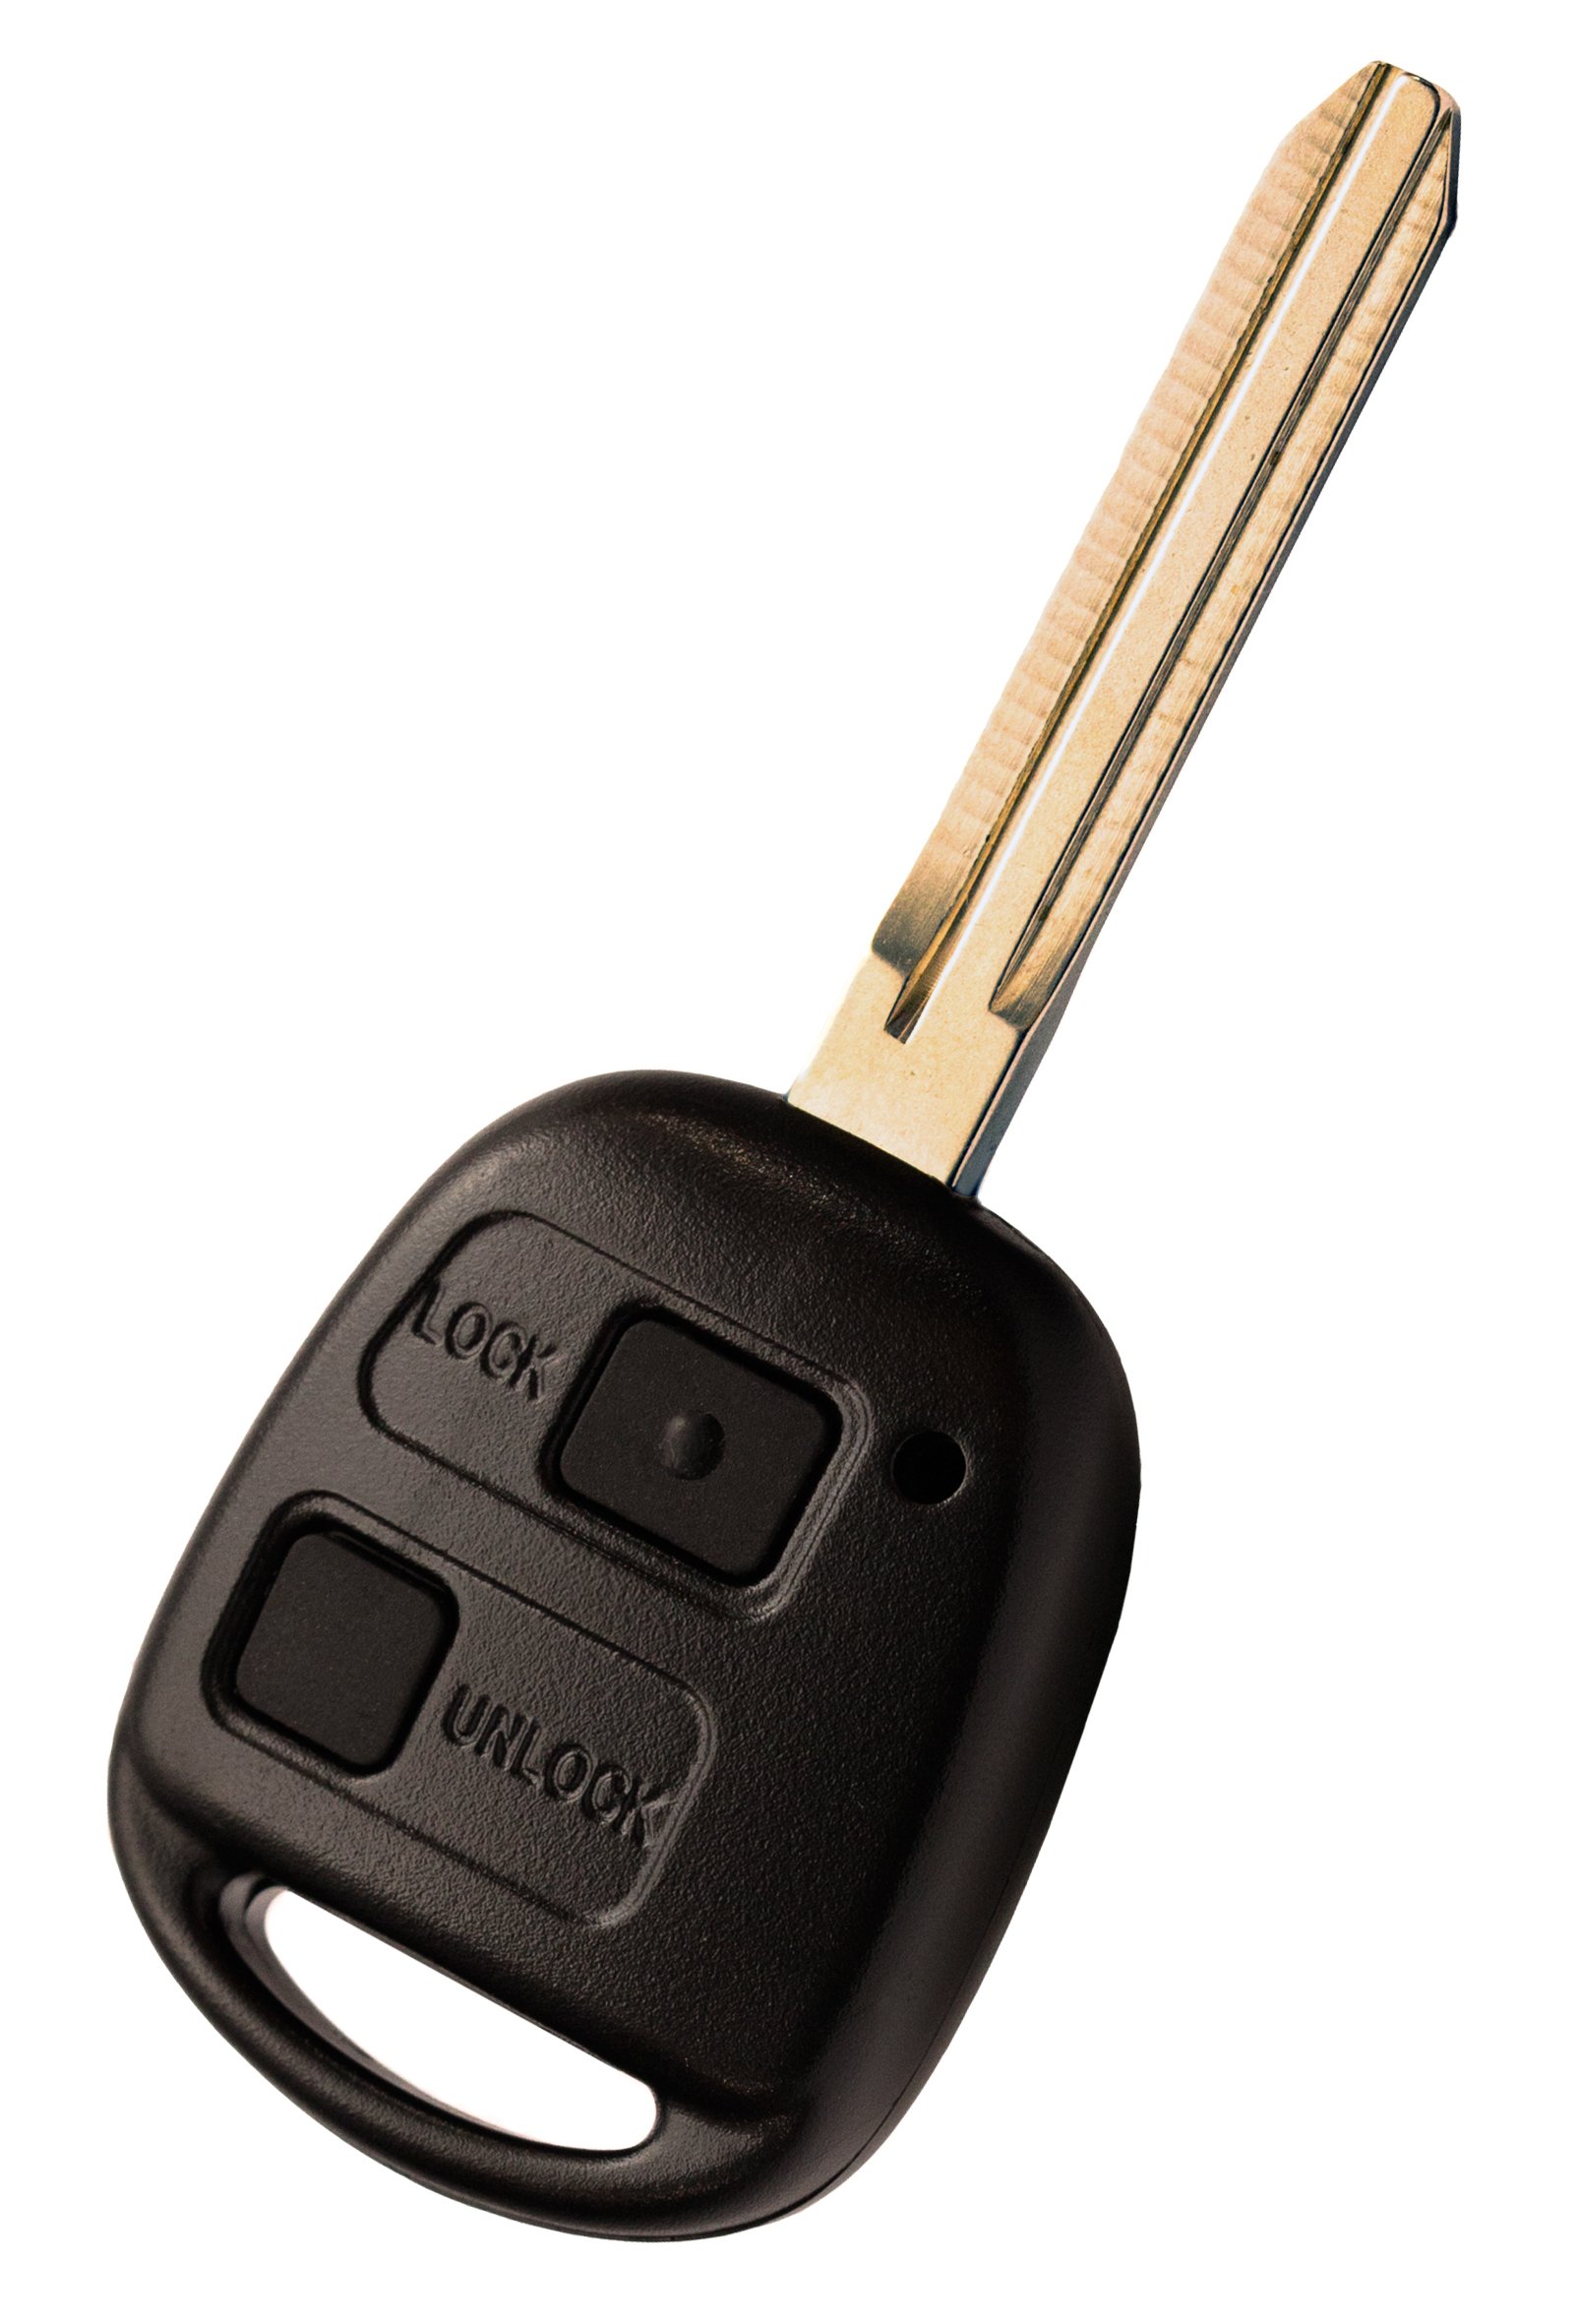 Liamgate Ersatz Schlüssel mit Rohling geeignet für Toyota Schlüsselgehäuse mit 2 Tasten passend für rav4 von Liamgate